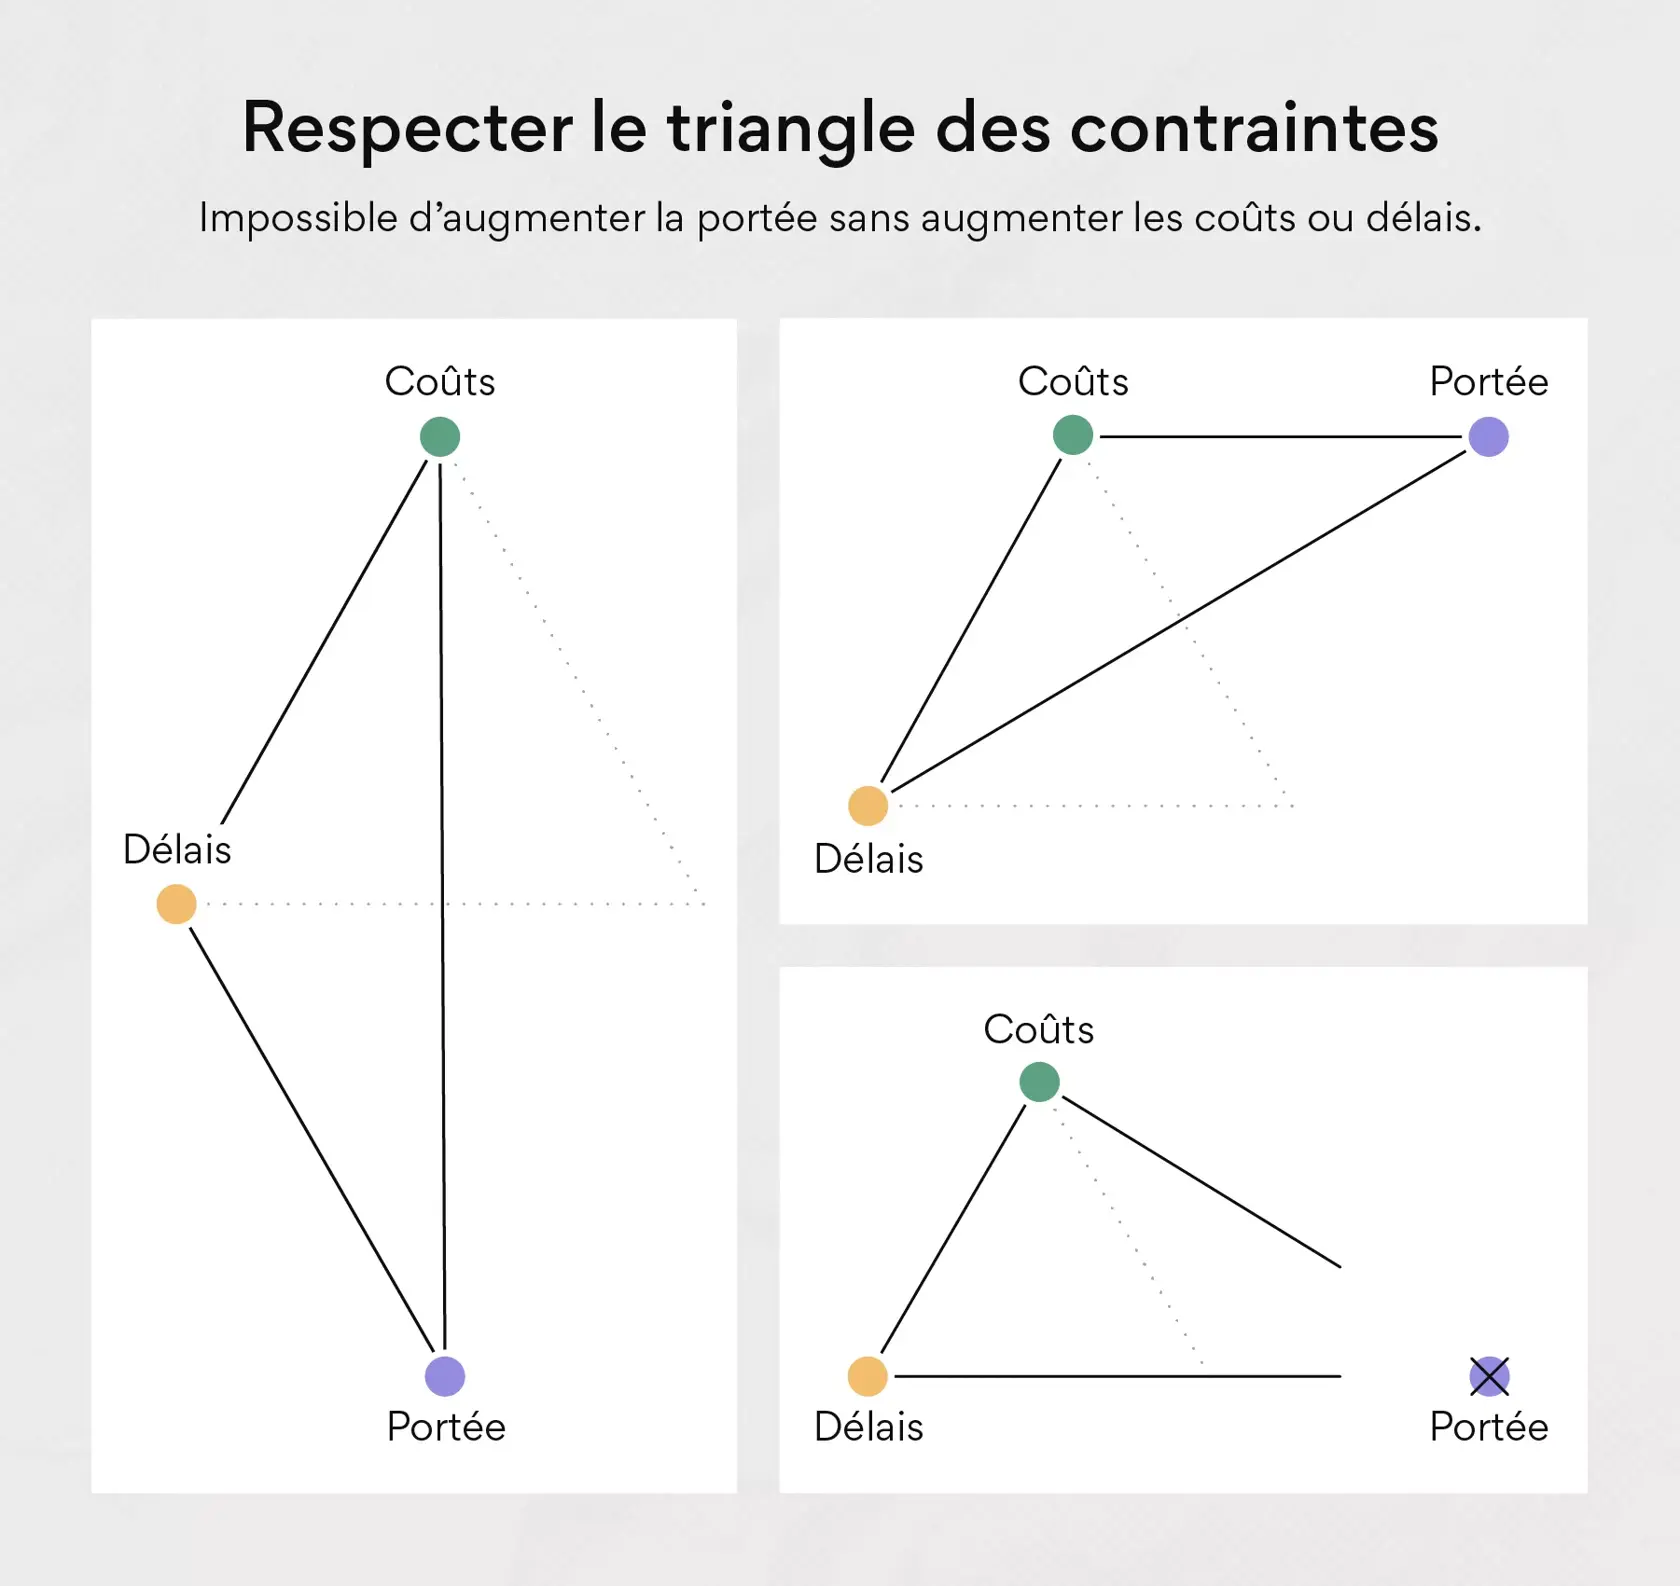 Respecter le triangle des contraintes